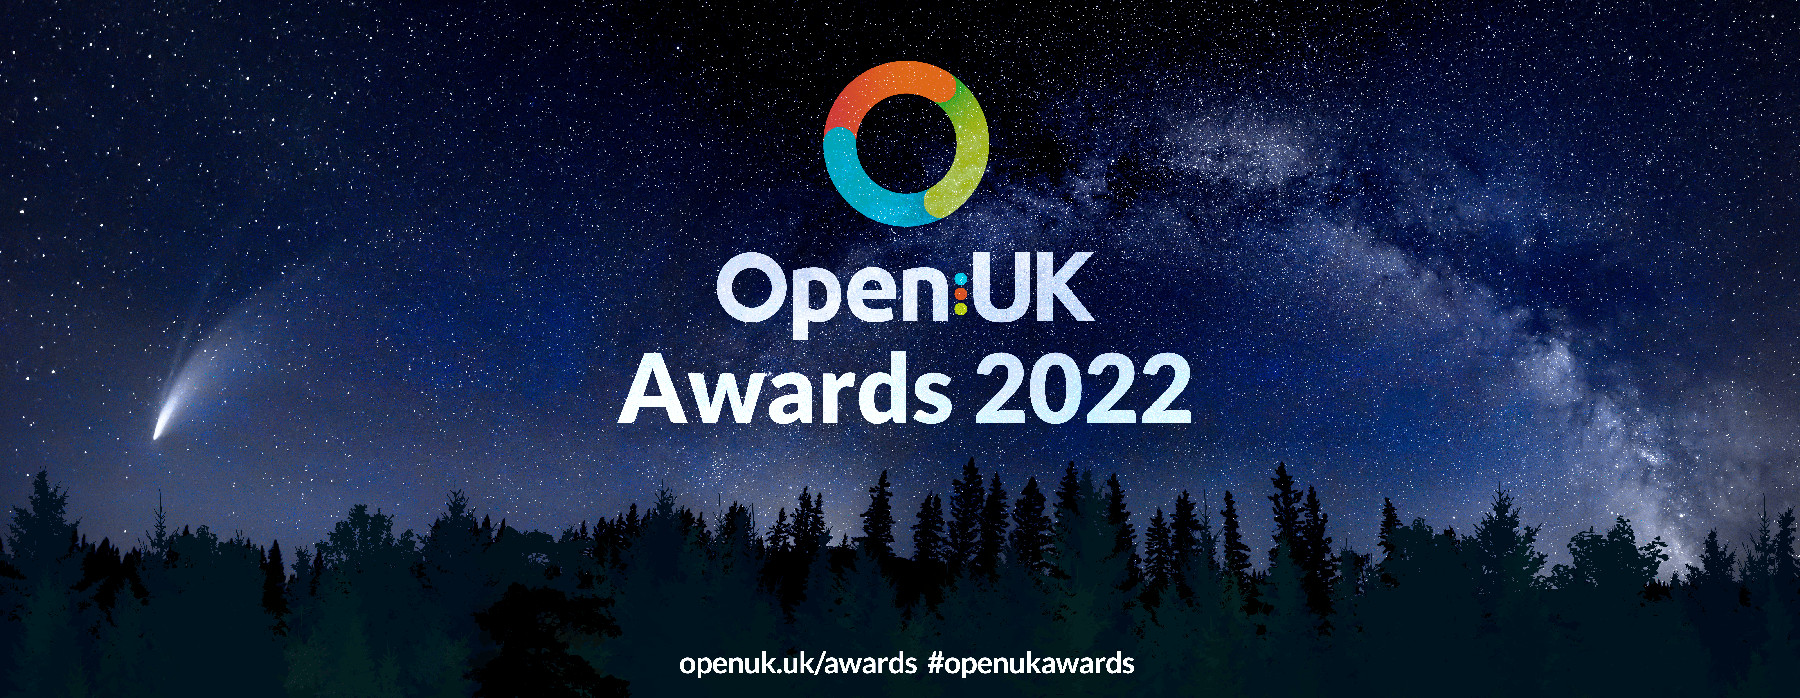 OpenUK Awards banner.